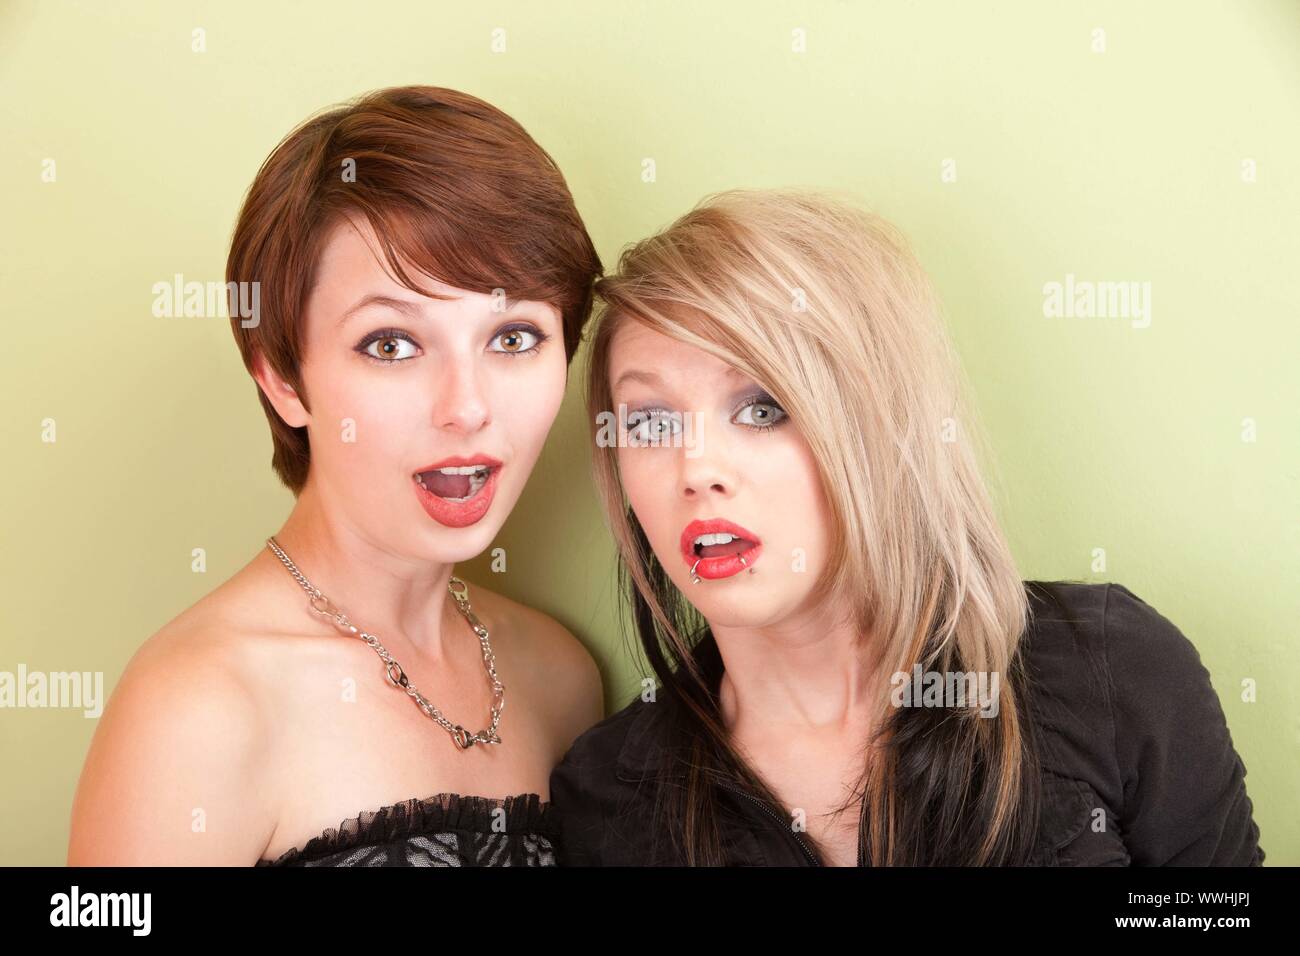 Deux jeunes filles à la punky avec expressions surpris posent devant un mur vert. Banque D'Images